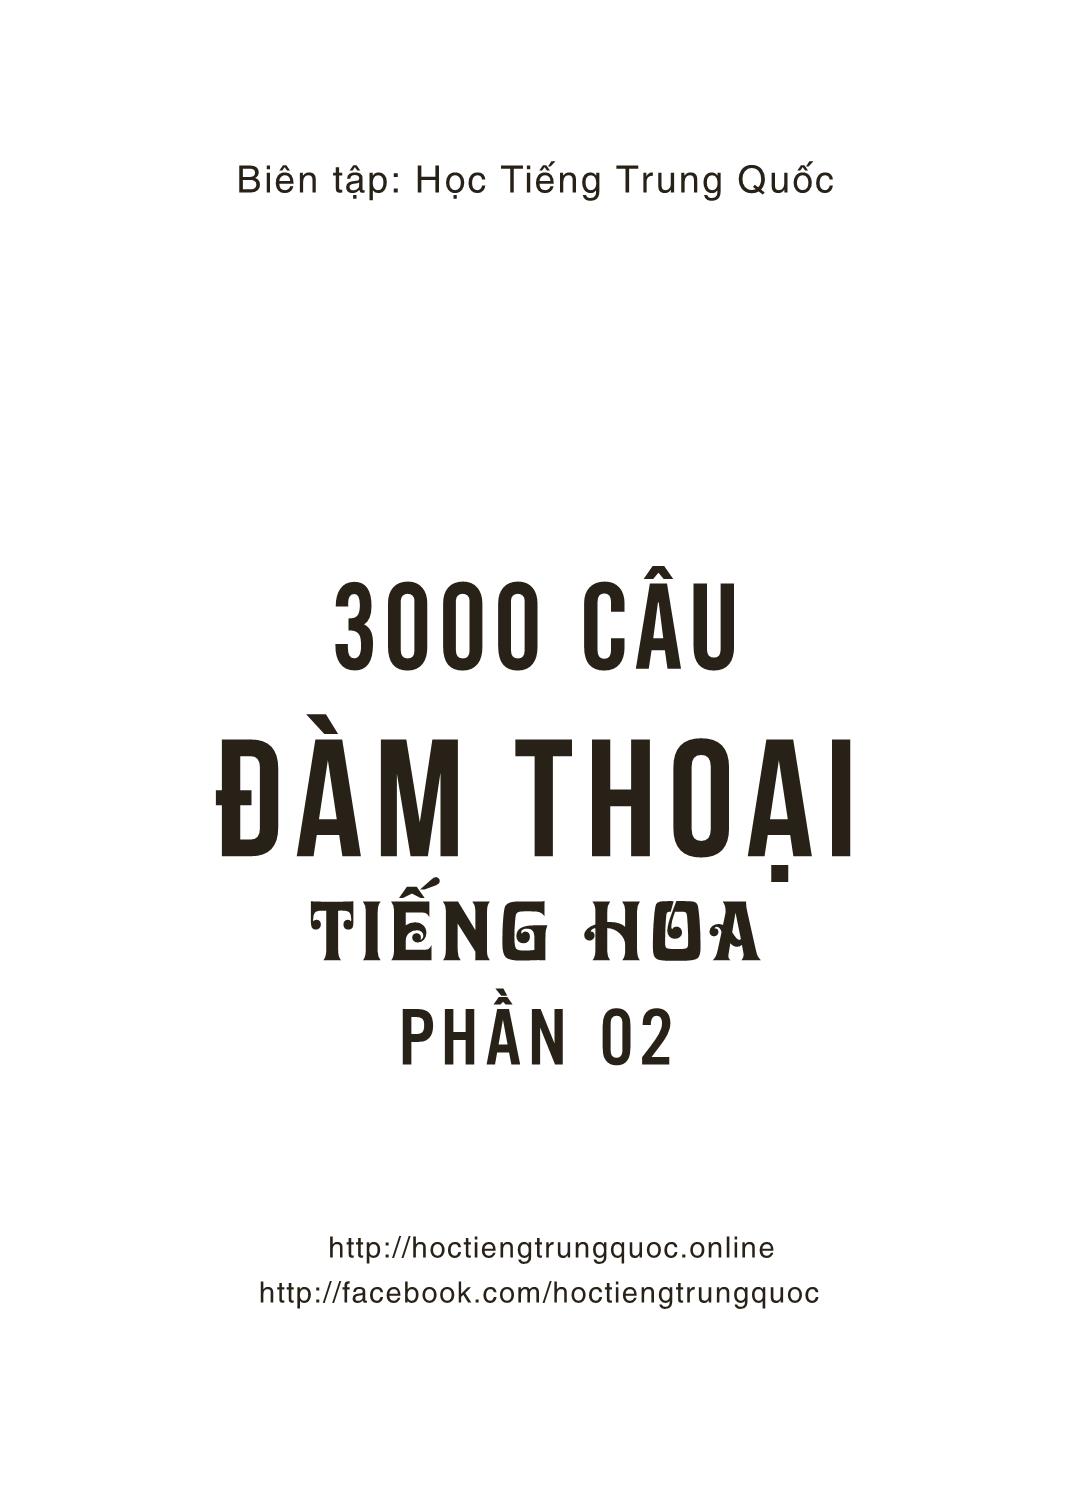 3000 Câu đàm thoại tiếng Hoa - Phần 2 trang 10